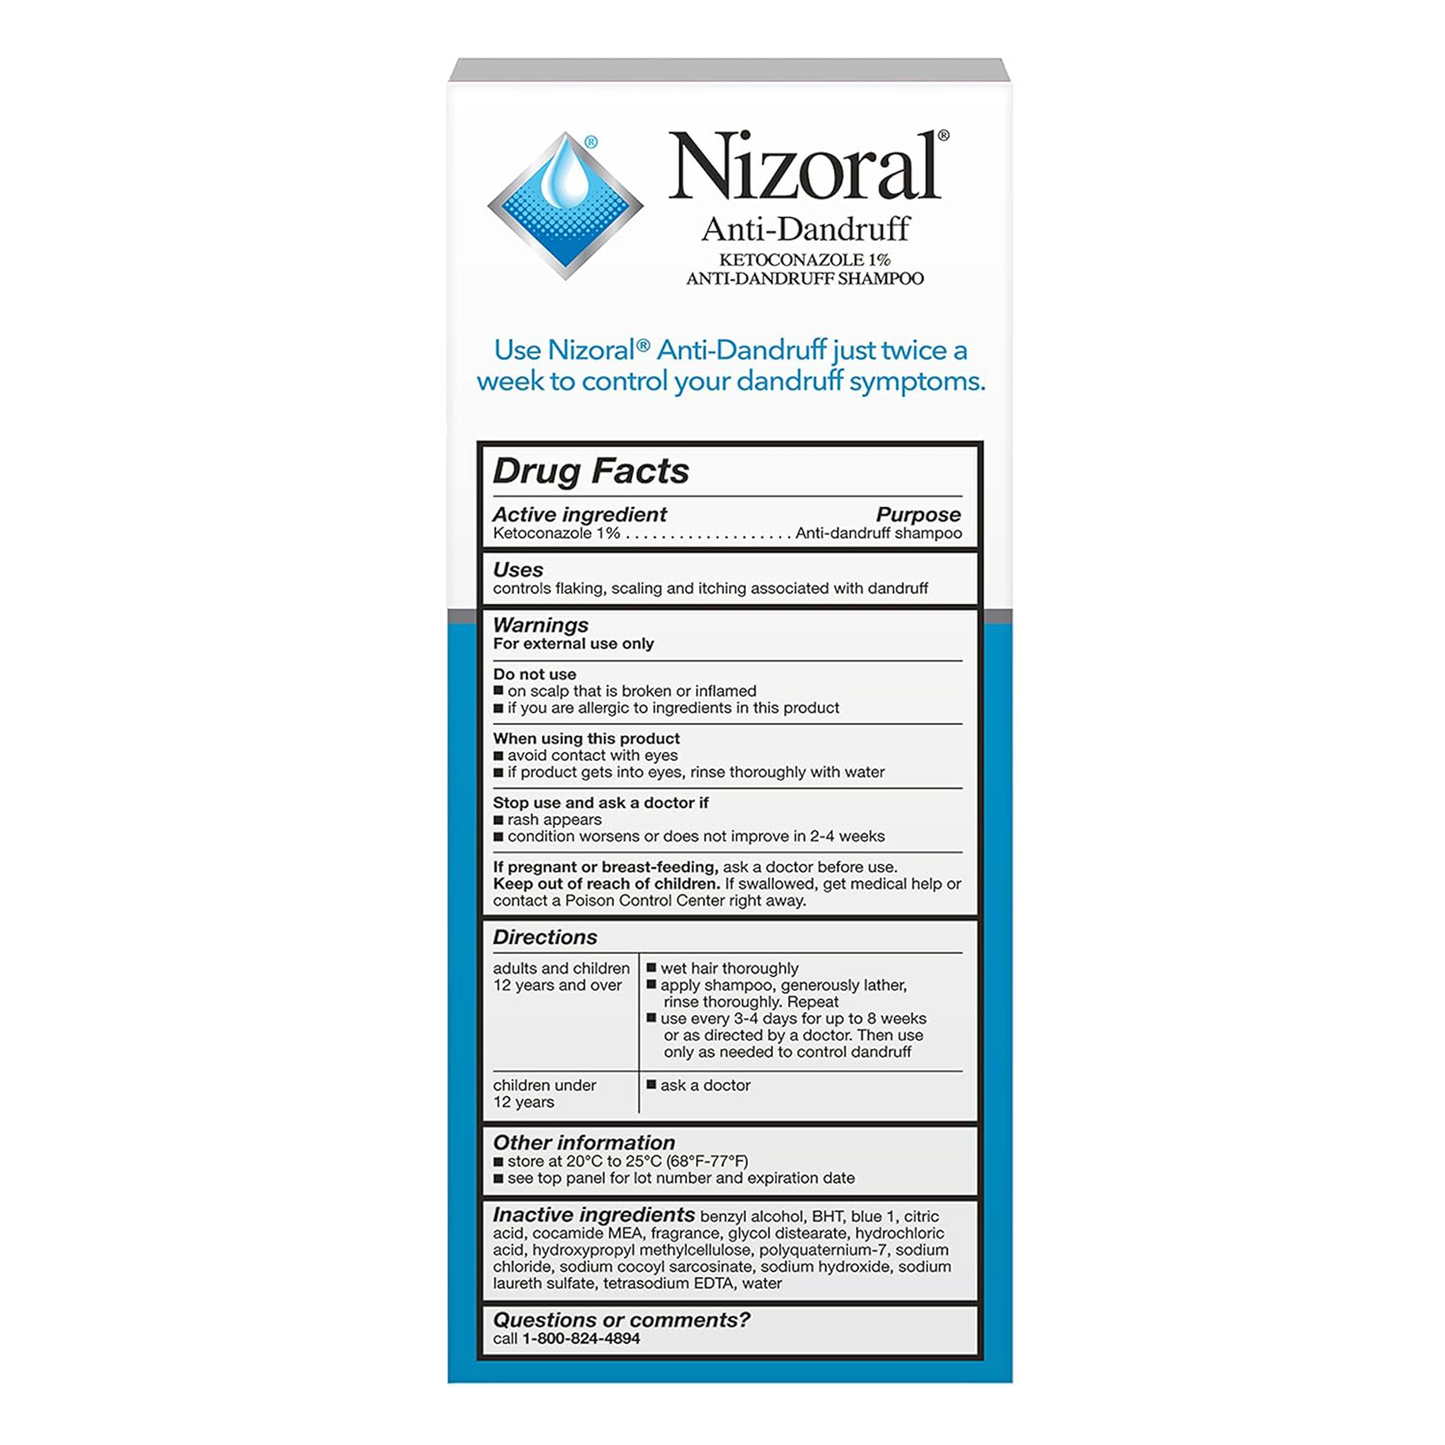 Nizoral ®️ Anti-Dandruff Ketoconazole 1% Anti-Dandruff Shampoo • Anti-Dandruff Shampoo Against Flaking, Scaling, Itching & Irritation • 1x200ml